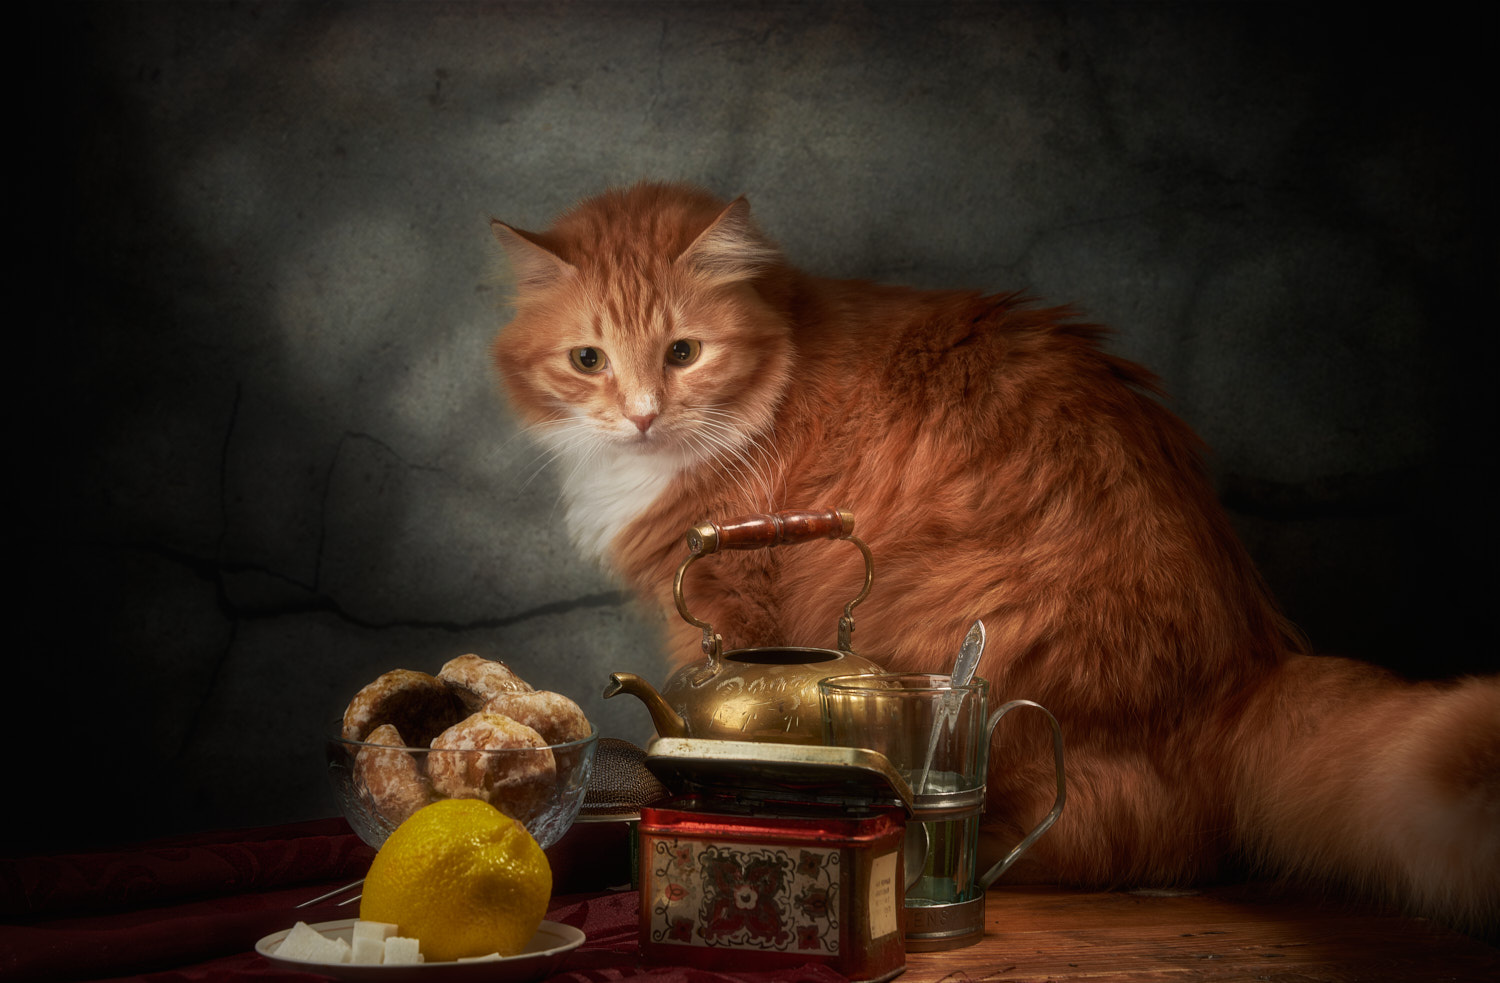 Подозрительный лимон. натюрморт композиция постановка сцена еда лимон кот питомец друг рыжий